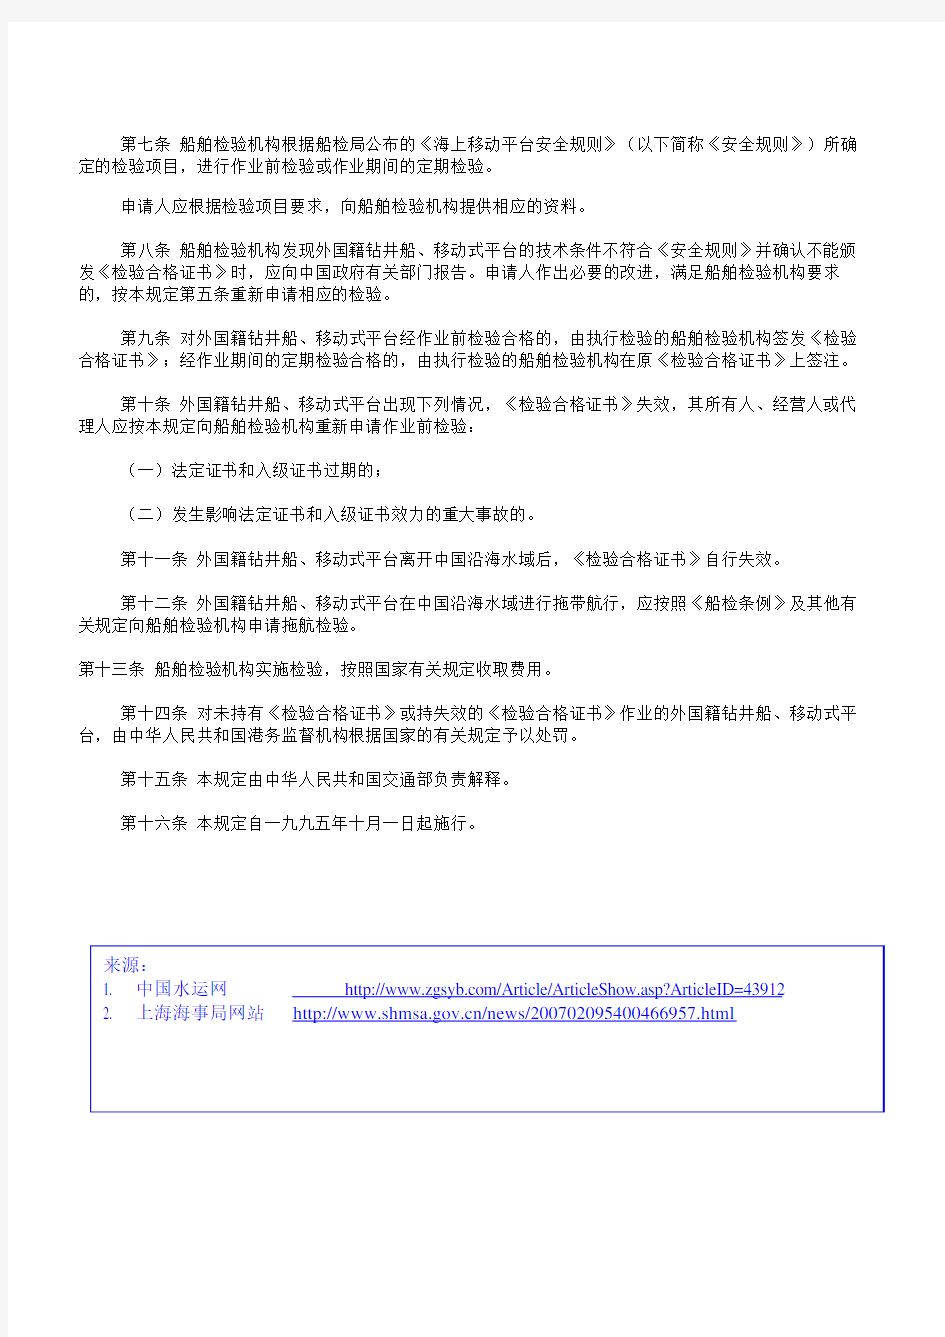 5,交通部三号令(1995)在中华人民共和国沿海水域作业的外国籍钻井船